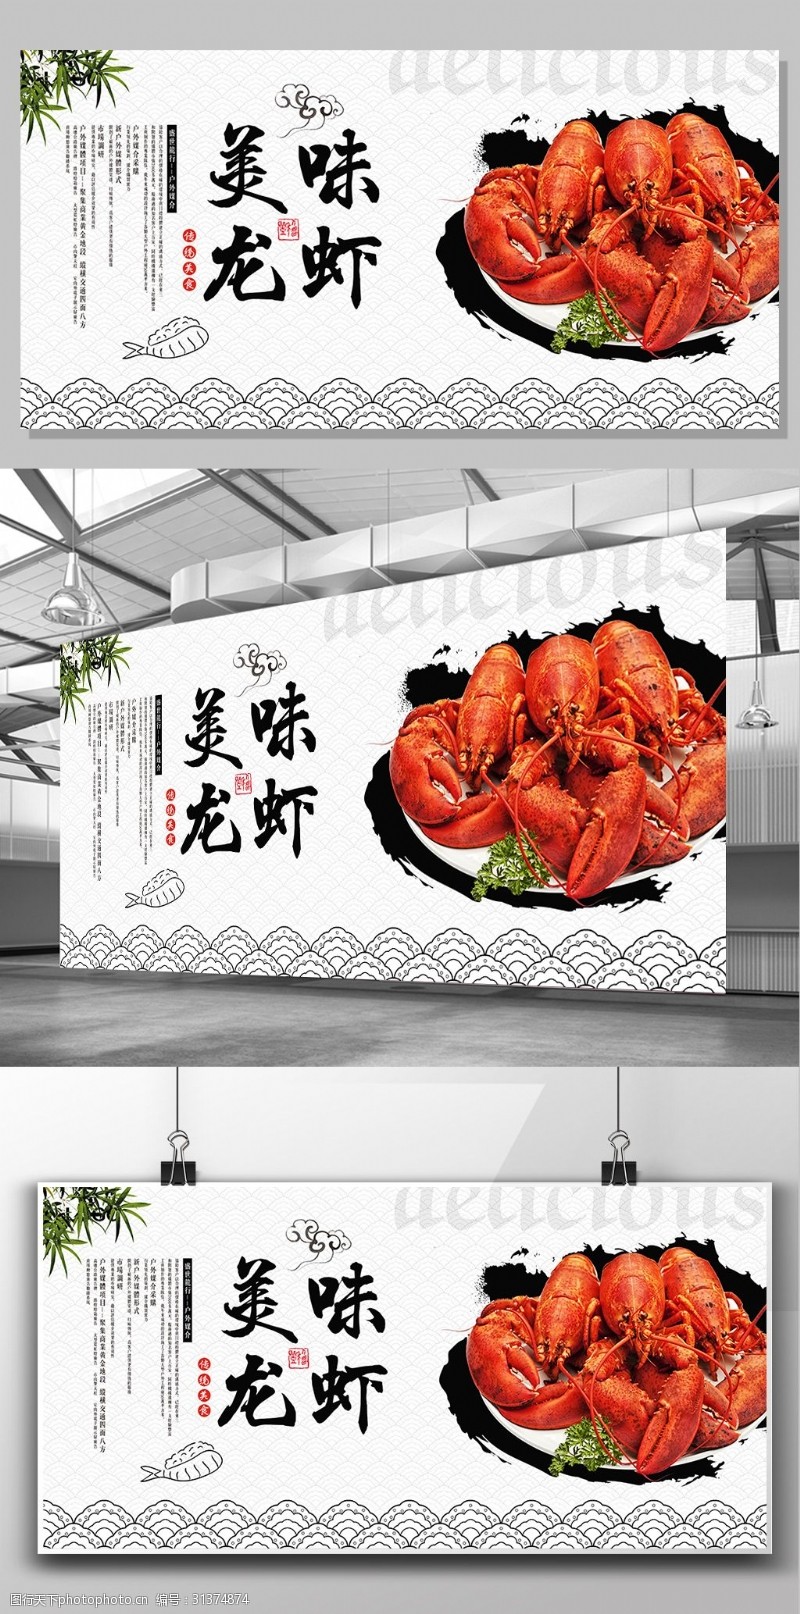 海鲜模板下载简洁中国风美味龙虾海鲜小吃展板